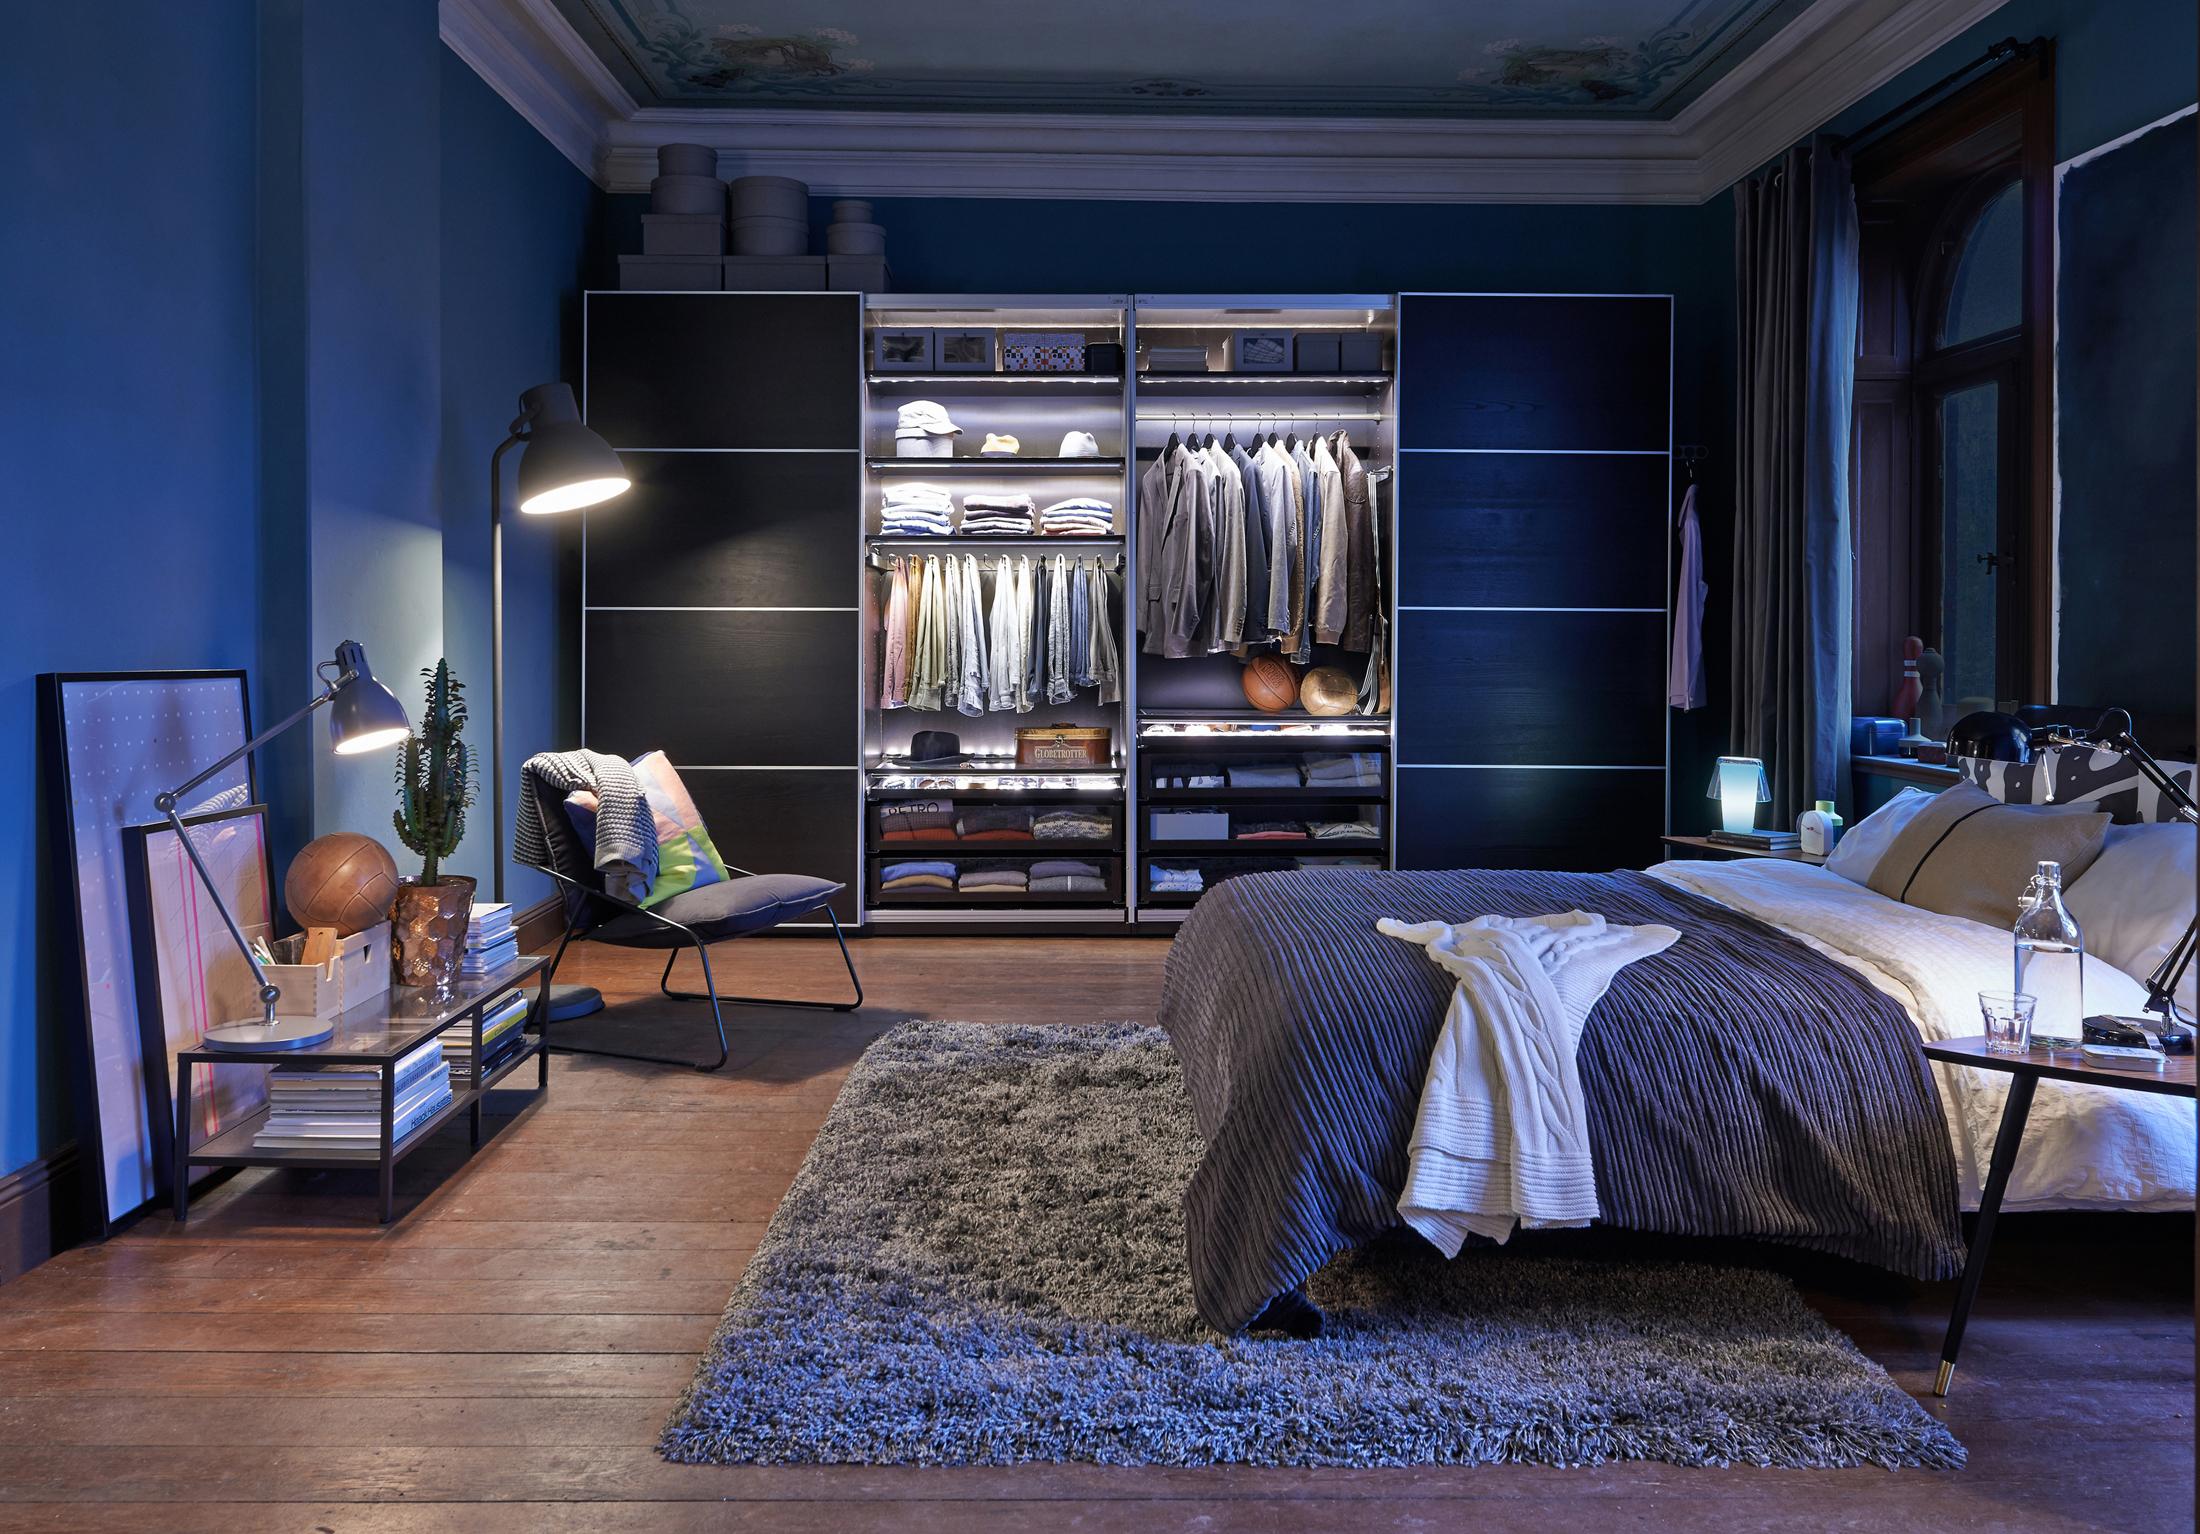 Schlafzimmer in Blau #beistelltisch #bett #teppich #bettwäsche #sessel #stehlampe #schrank #tagesdecke #ikea #kleiderschrank #grauersessel #blauewandfarbe ©Inter IKEA Systems B.V.